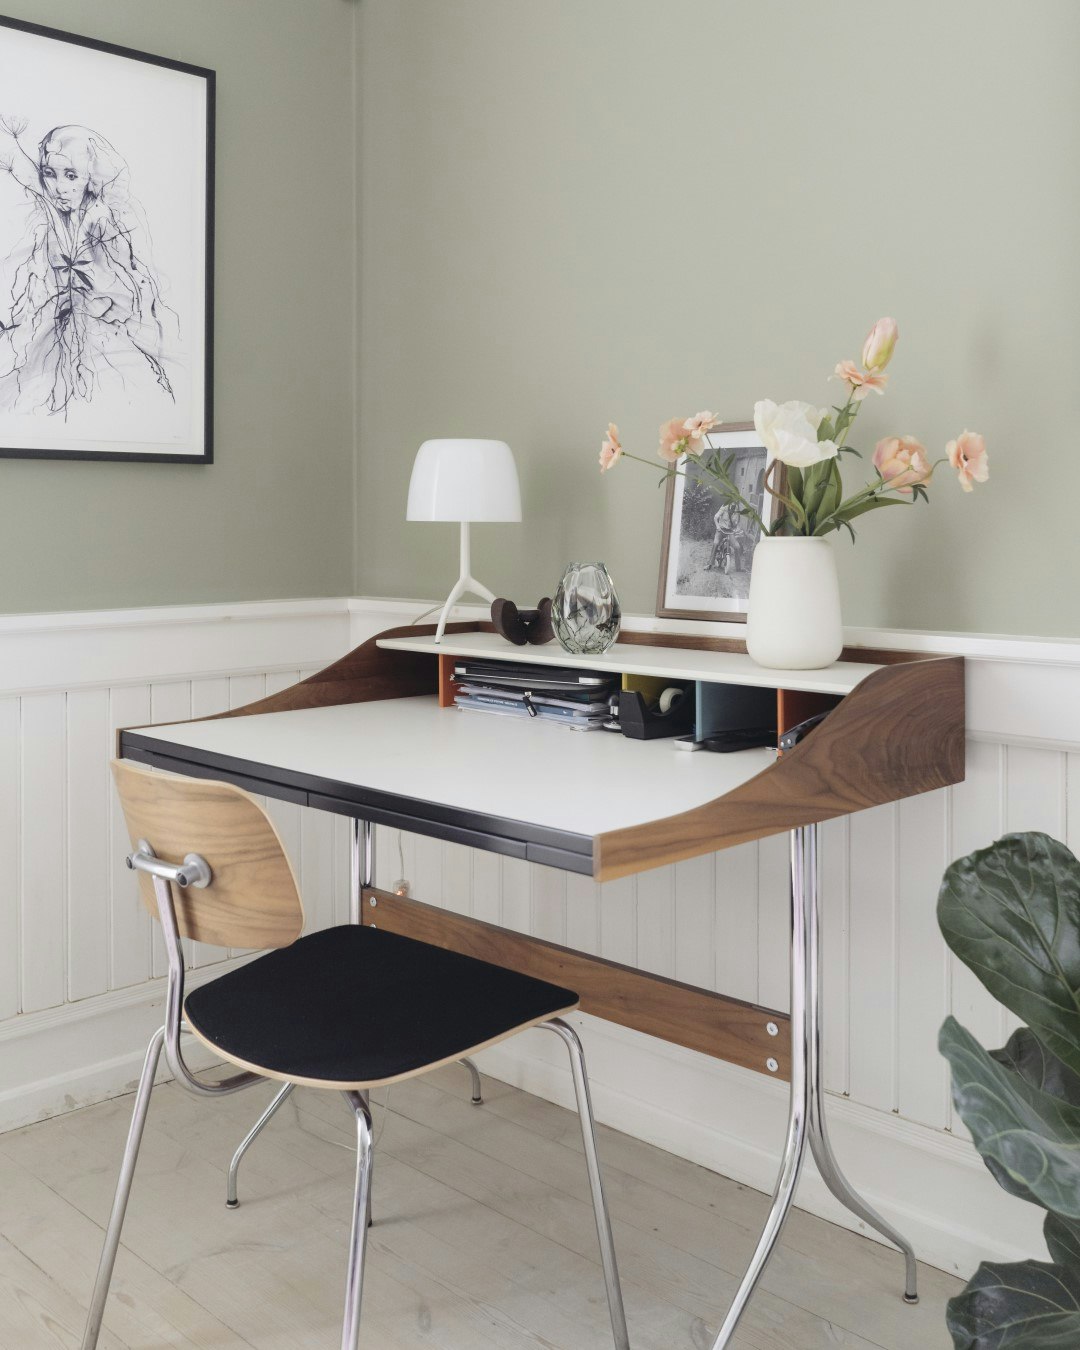 Arbejdsrummet har fået en rolig grøn vægfarve, der fremhæver de hvide paneler og bordets mørke træ.